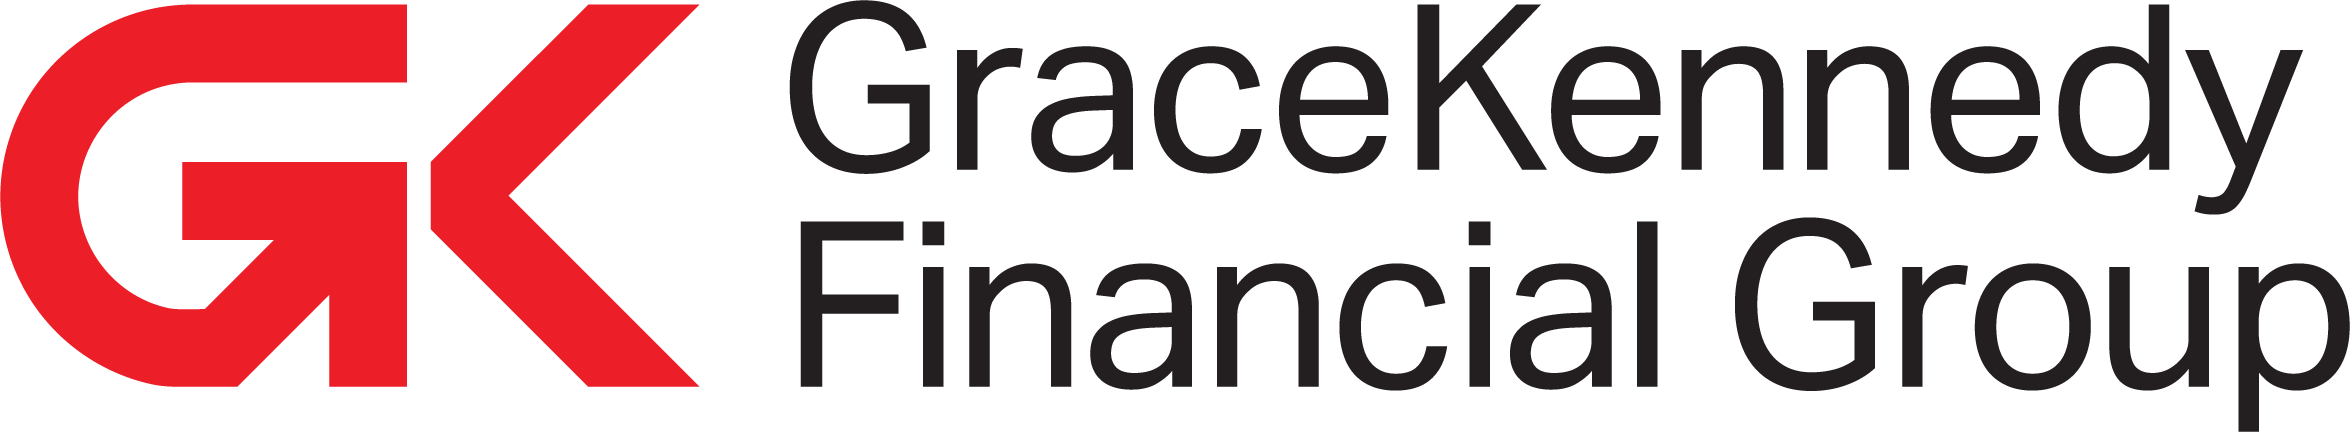 gracekennedy financial group logo